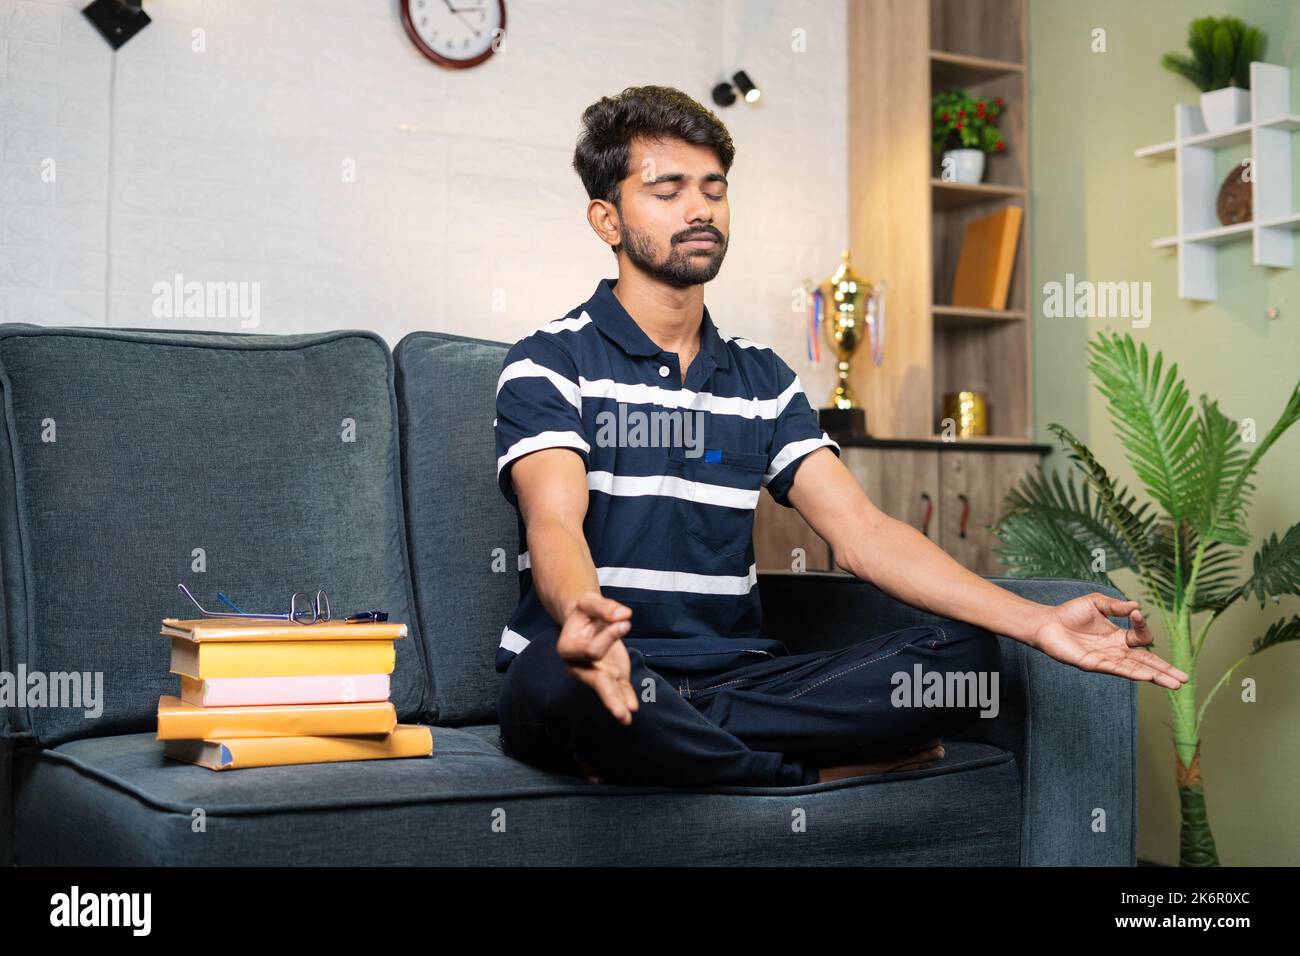 Junge indische Studentin meditiert vor der Vorbereitung zum Studium zu Hause - Konzept der Meditation, gesunder Lebensstil und Stressabbau. Stockfoto